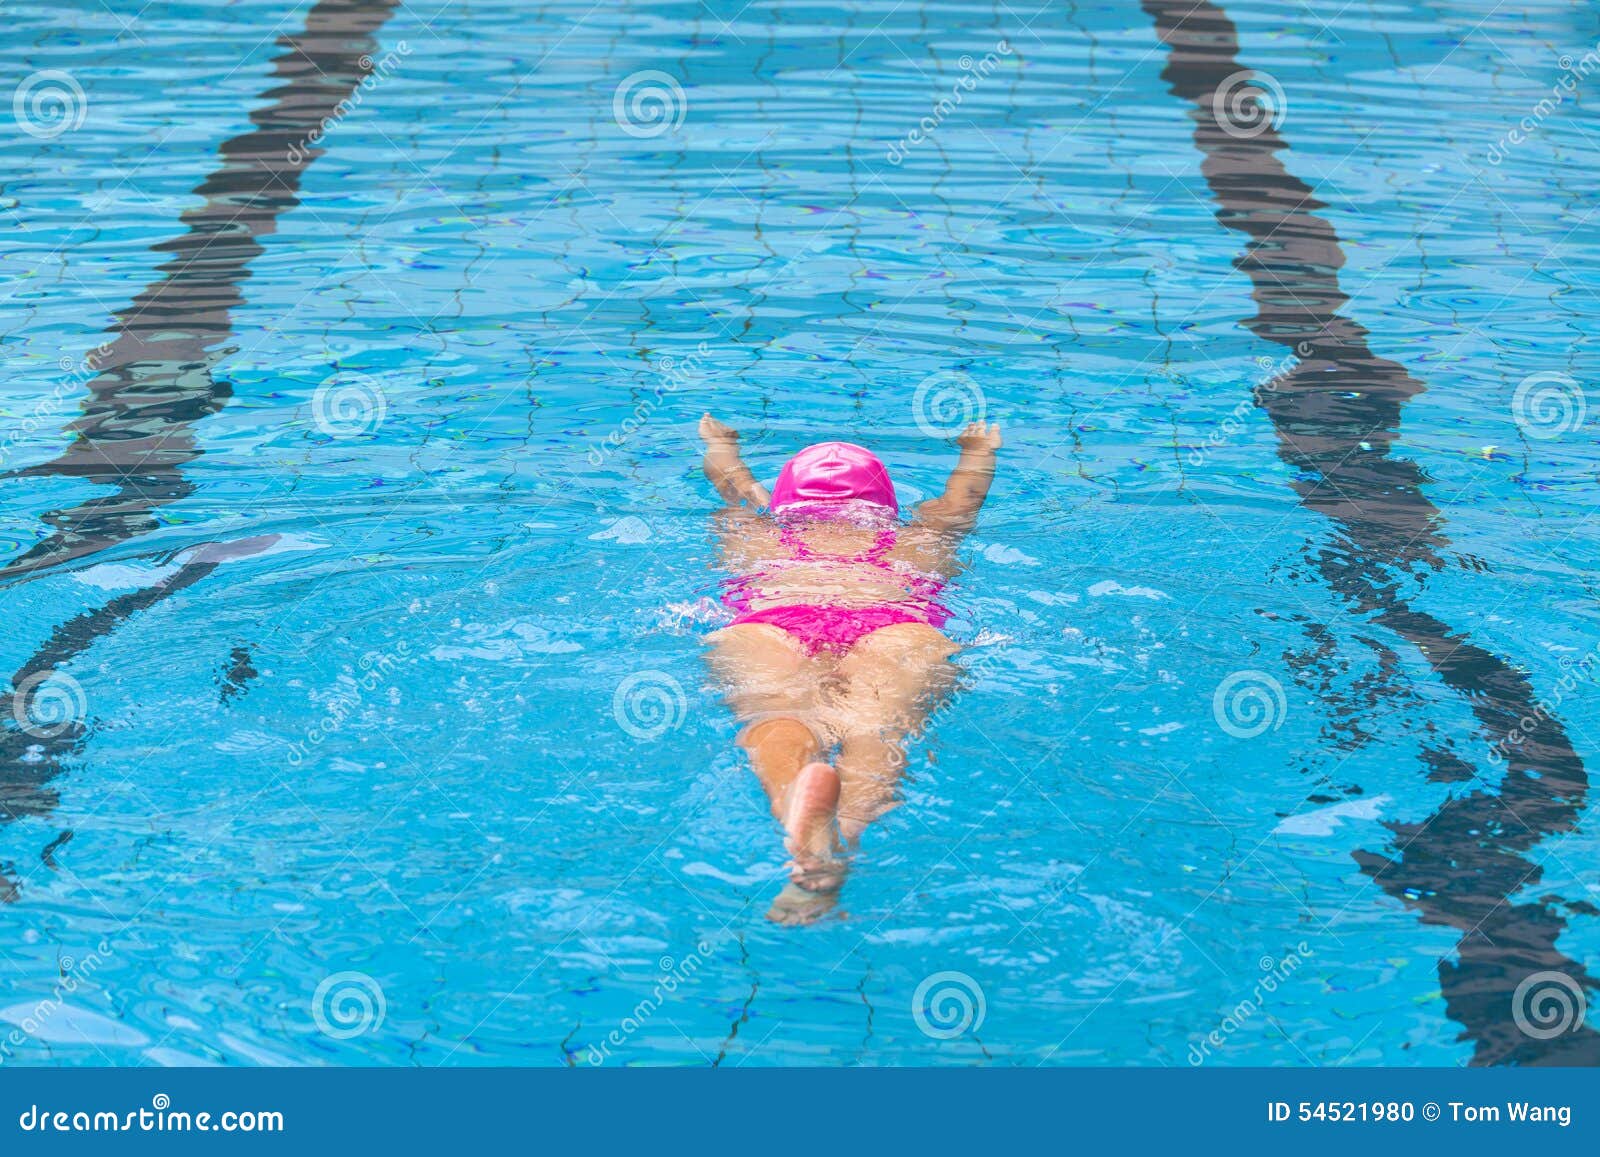 Толстухи в бассейне. Женщина плавает в бассейне. Девушка плывет в бассейне. Толстая женщина плавает в бассейне. Блондинка плавает в бассейне.